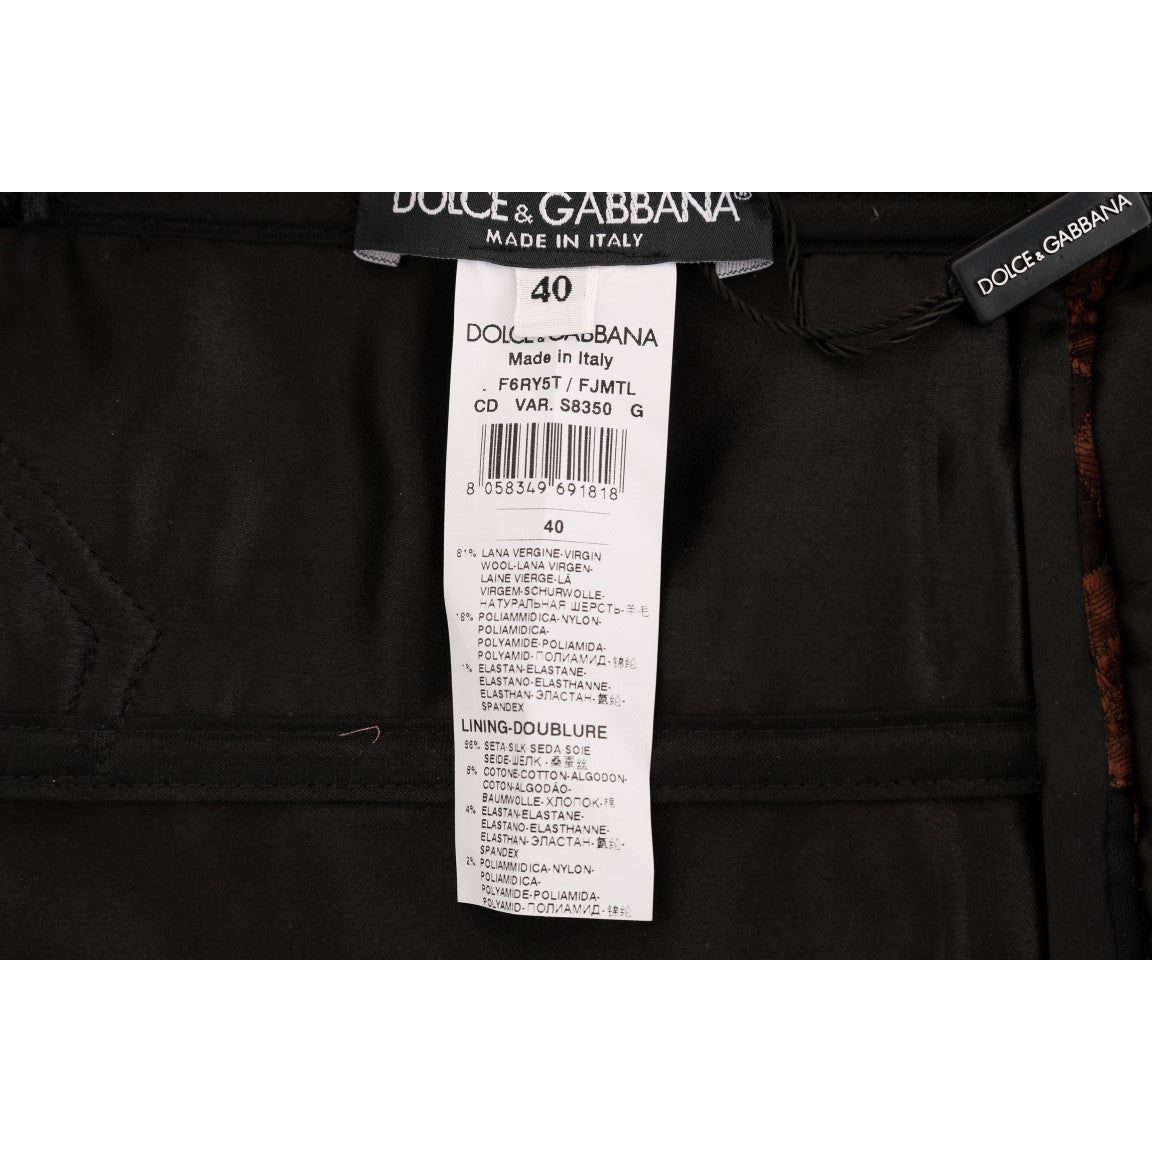 Dolce & Gabbana | Black Brown Floral Brocade A-Line Dress | McRichard Designer Brands